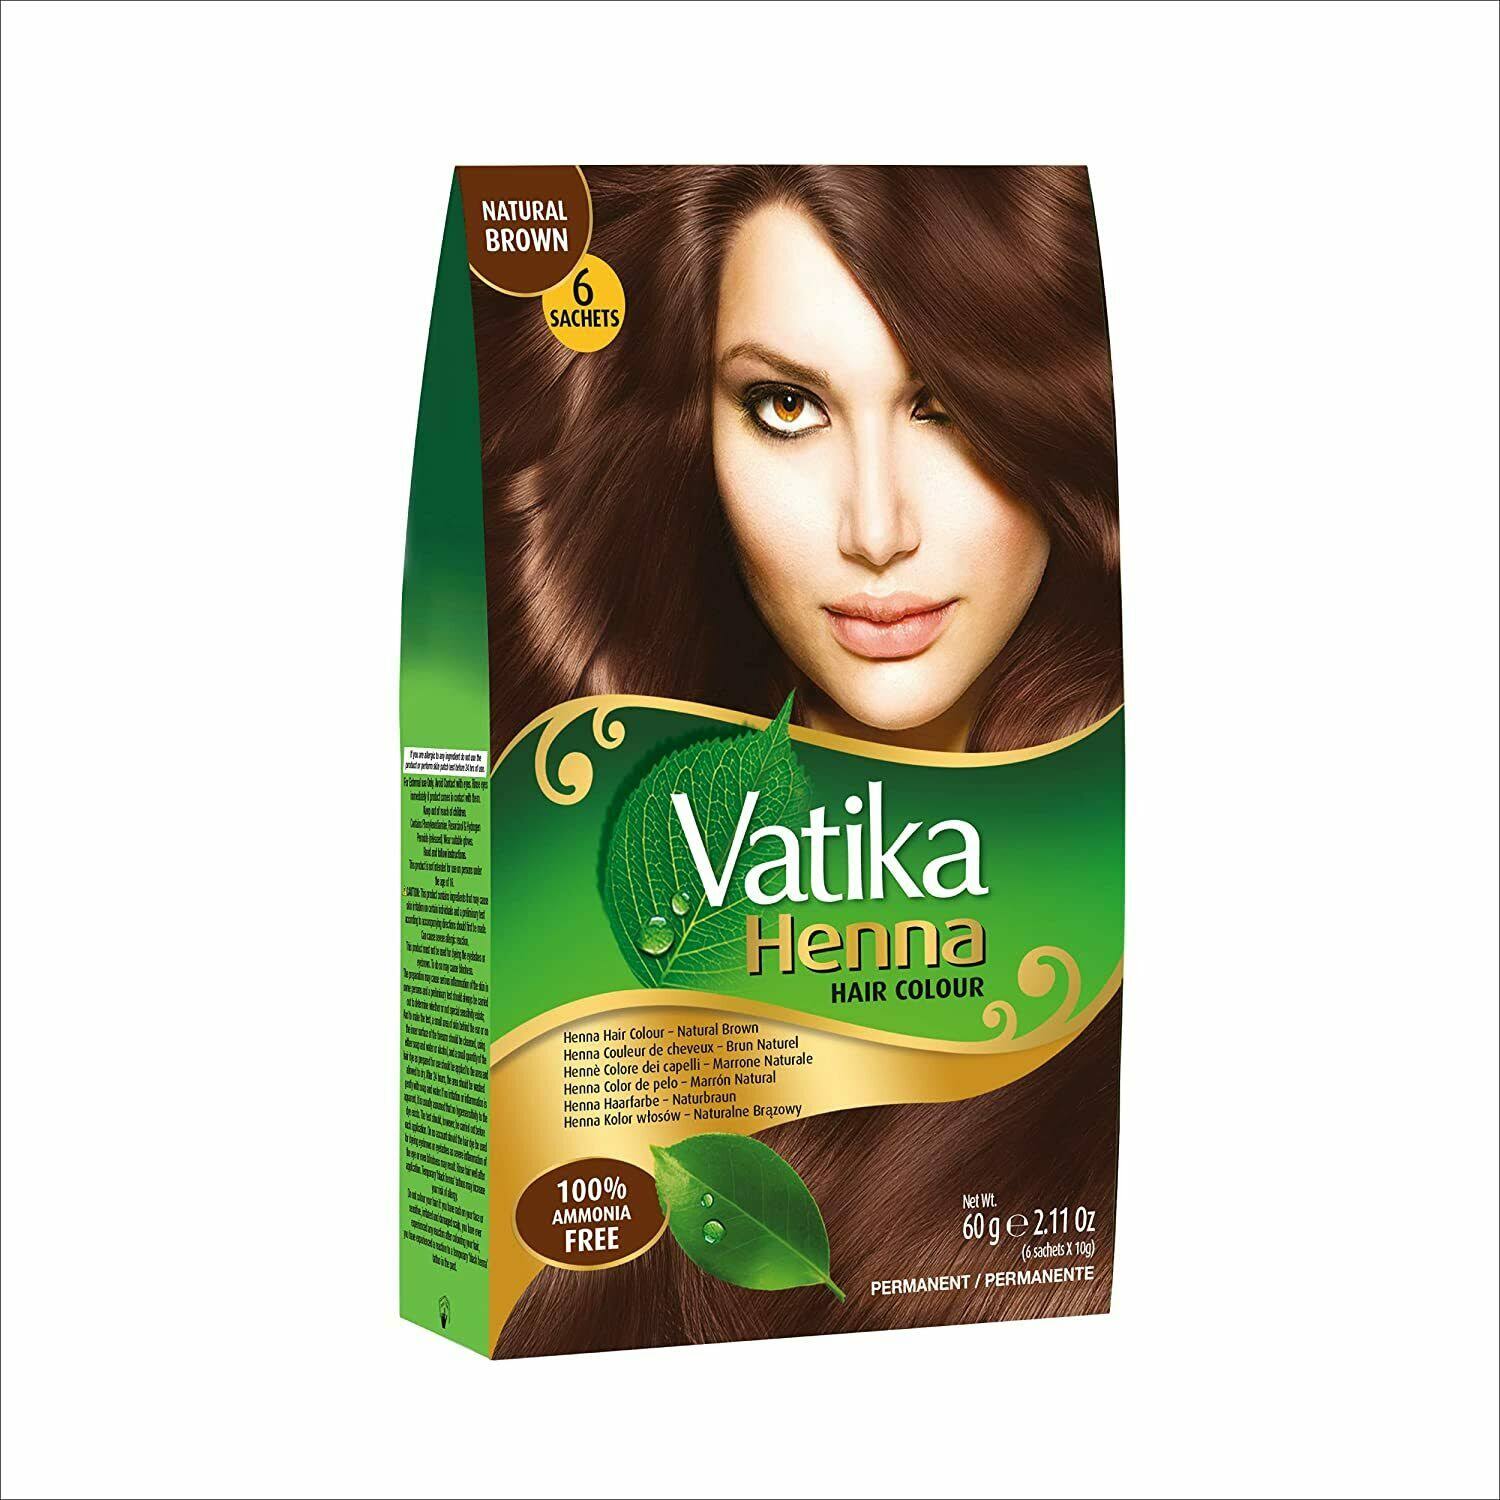 Vatika Henna Hair Colour - Natural Brown